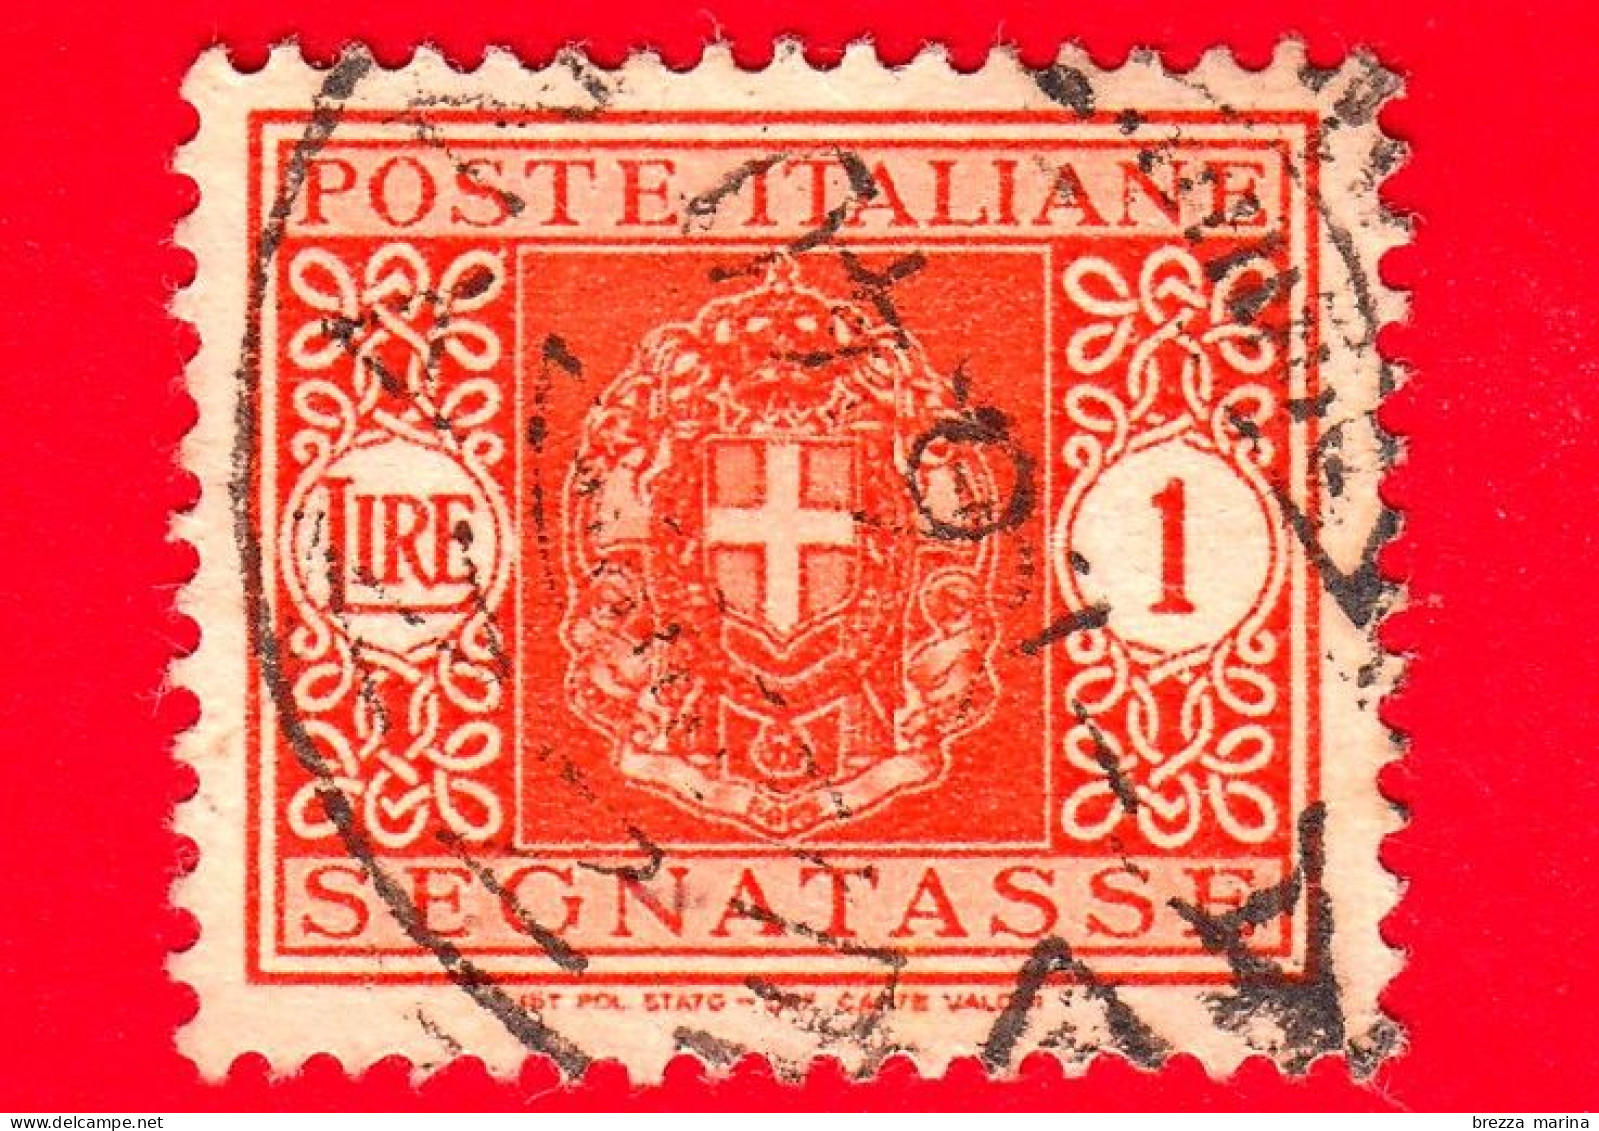 ITALIA - Usato - 1945 - Segnatasse - Stemma Senza Fasci, Filigrana Ruota - 1 L. - Impuestos